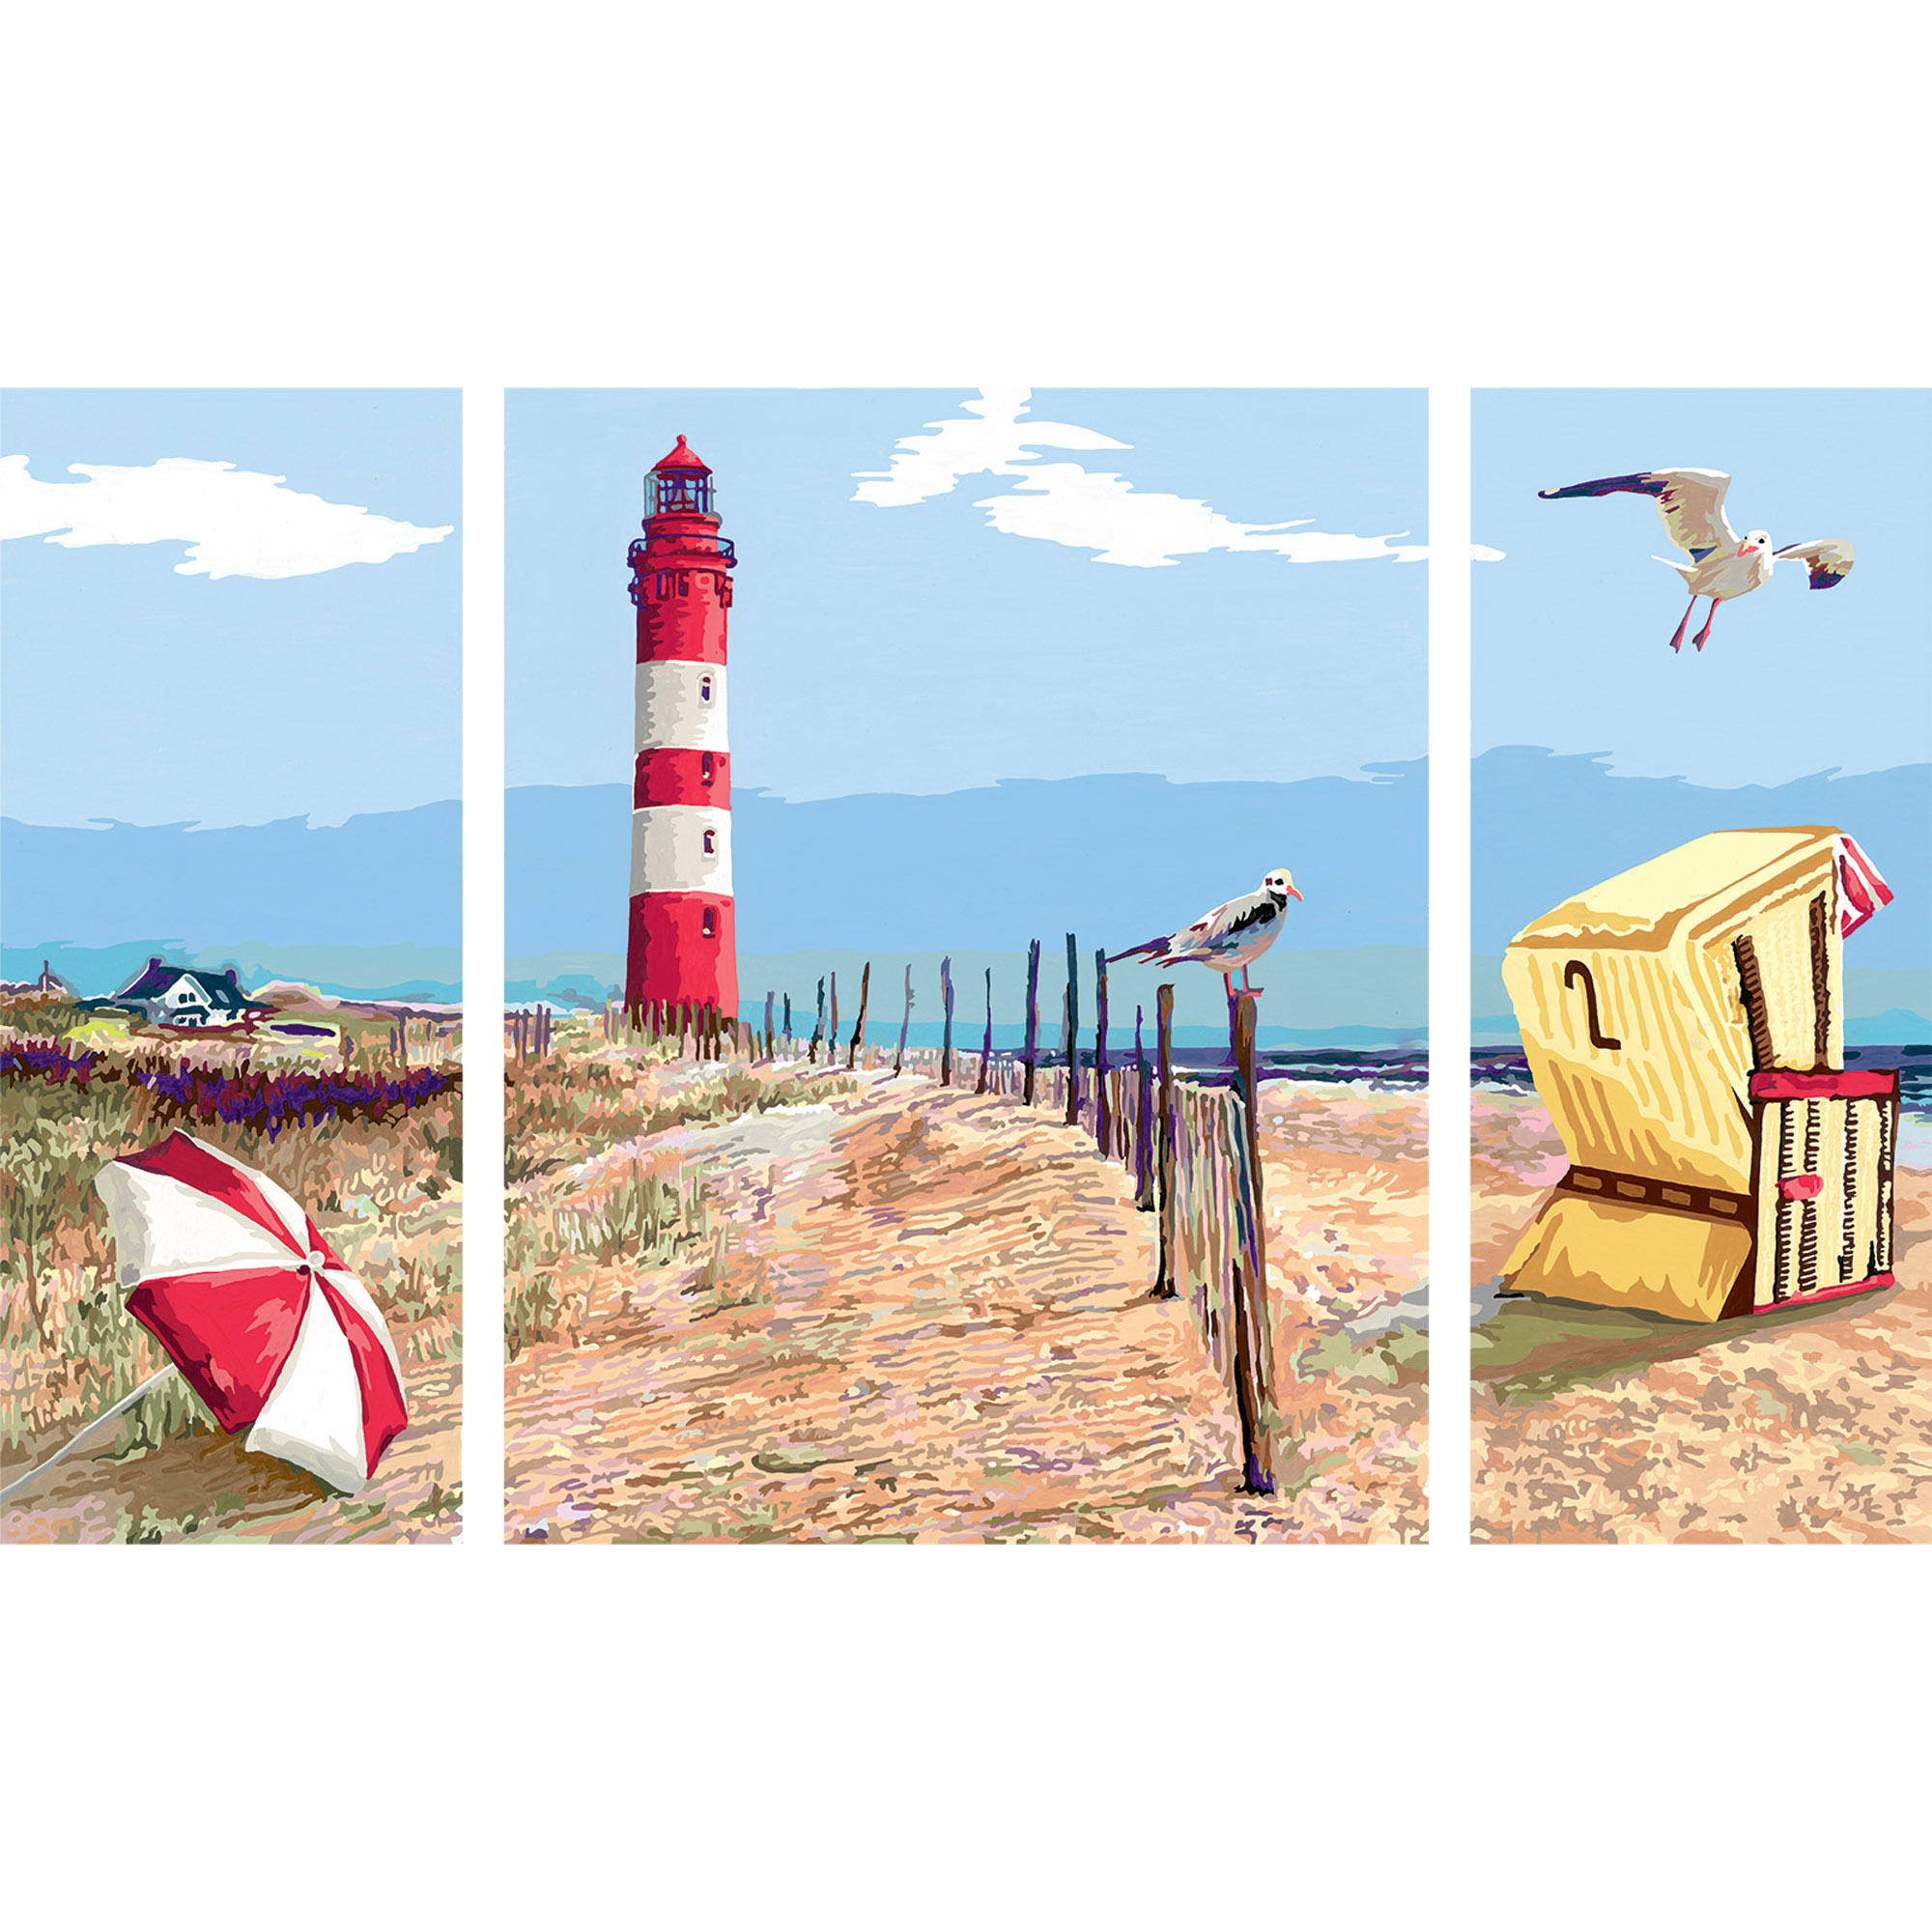 Ravensburger - creart trittico, spiaggia del nord, kit per dipingere con i numeri, contiene 3 tavole prestampate, pennello, colori e accessori, gioco creativo e relax per adulti 14+ anni - CREART